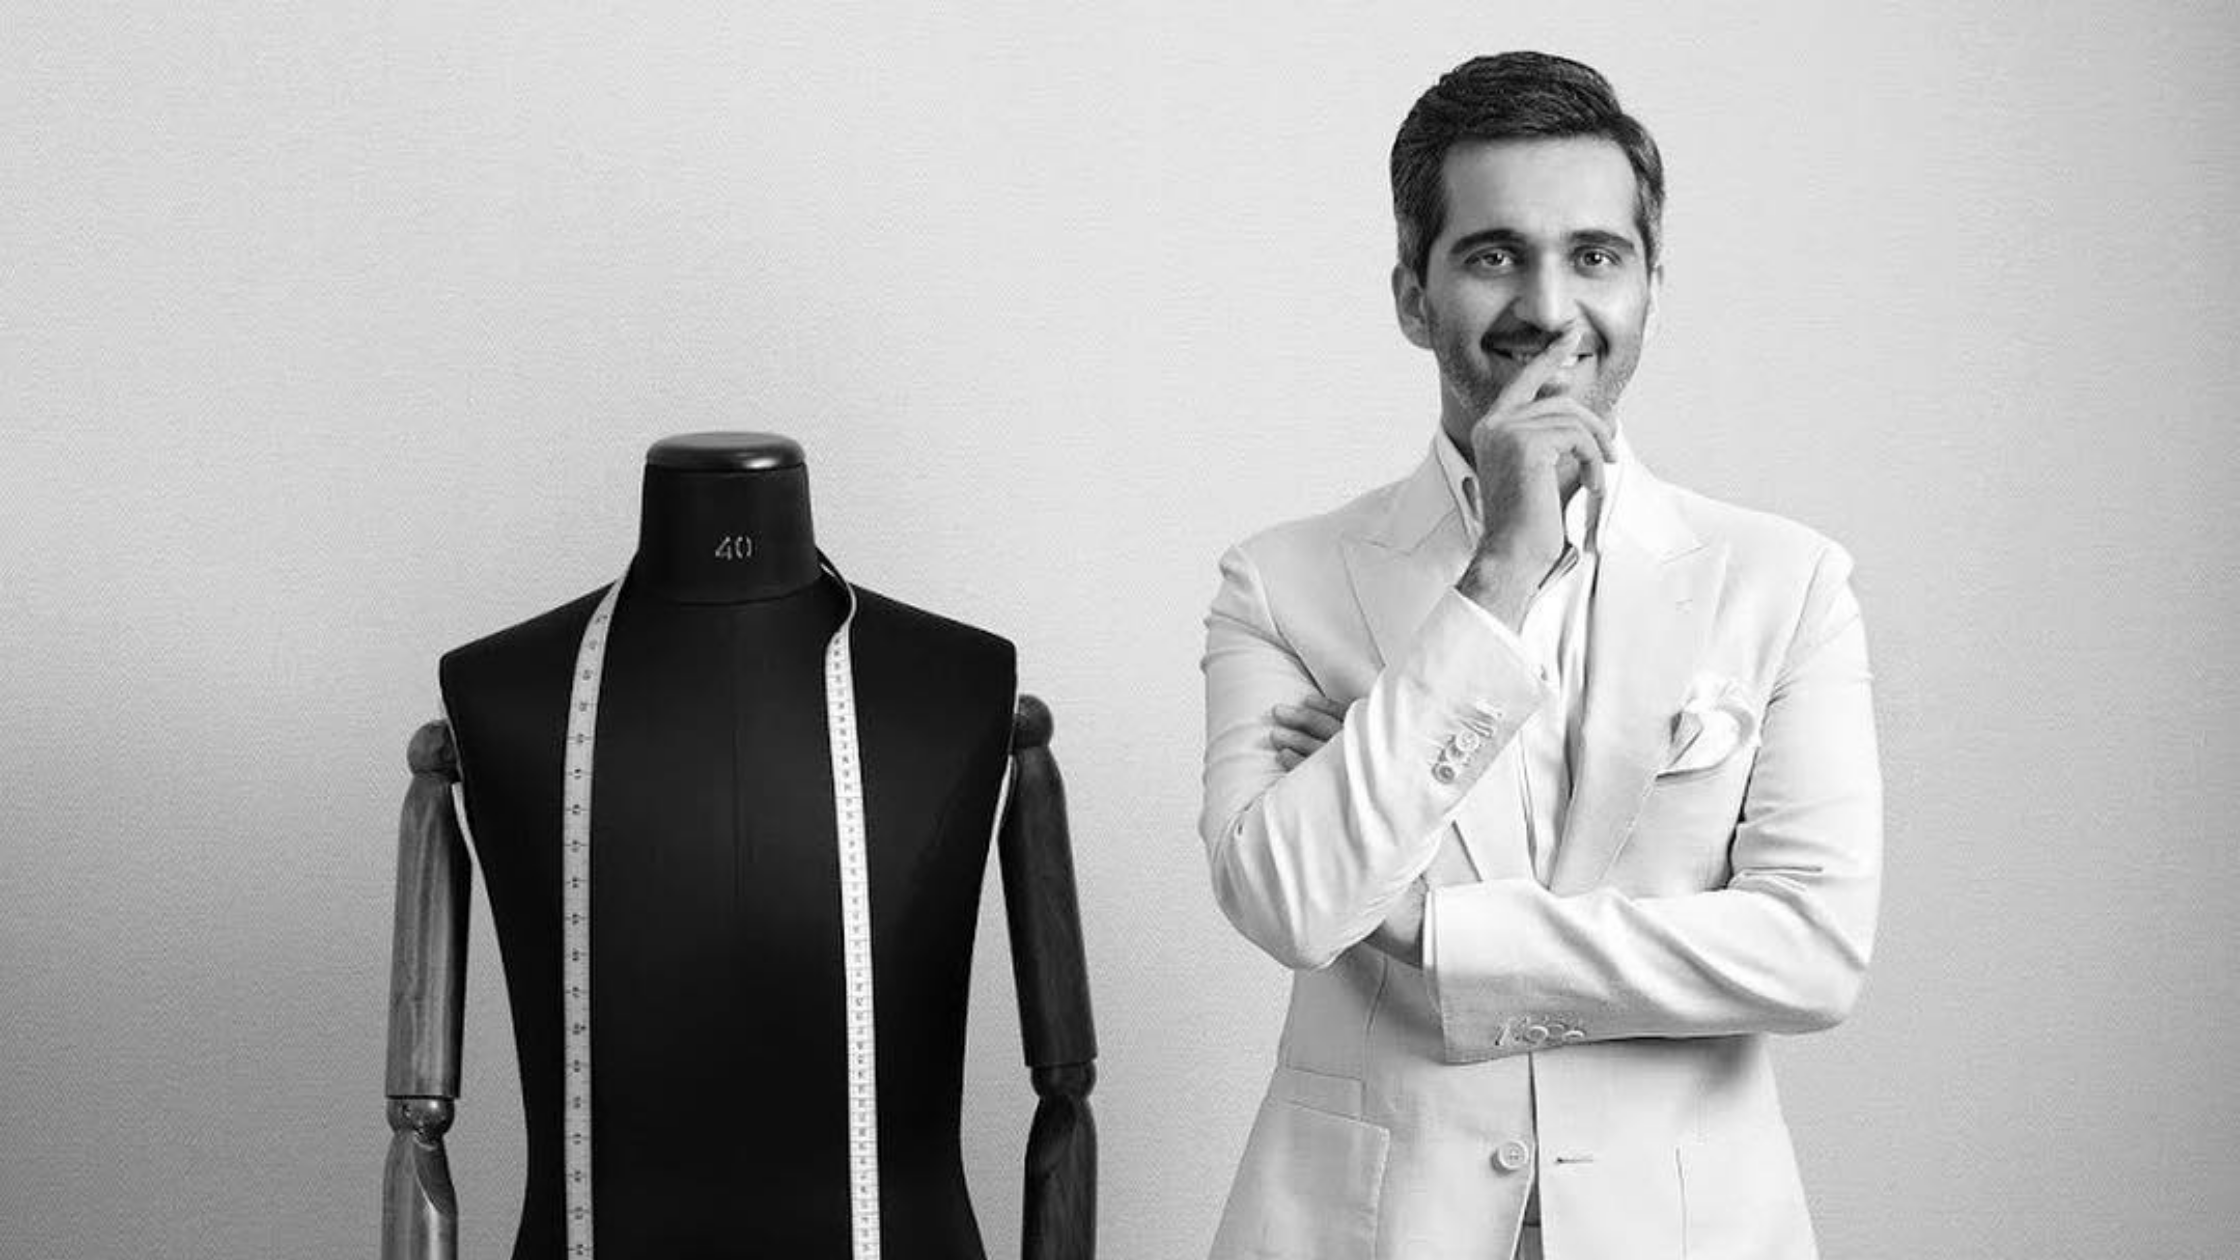 AKBAR FASHION – Blazer and Designer Suit Specialist.